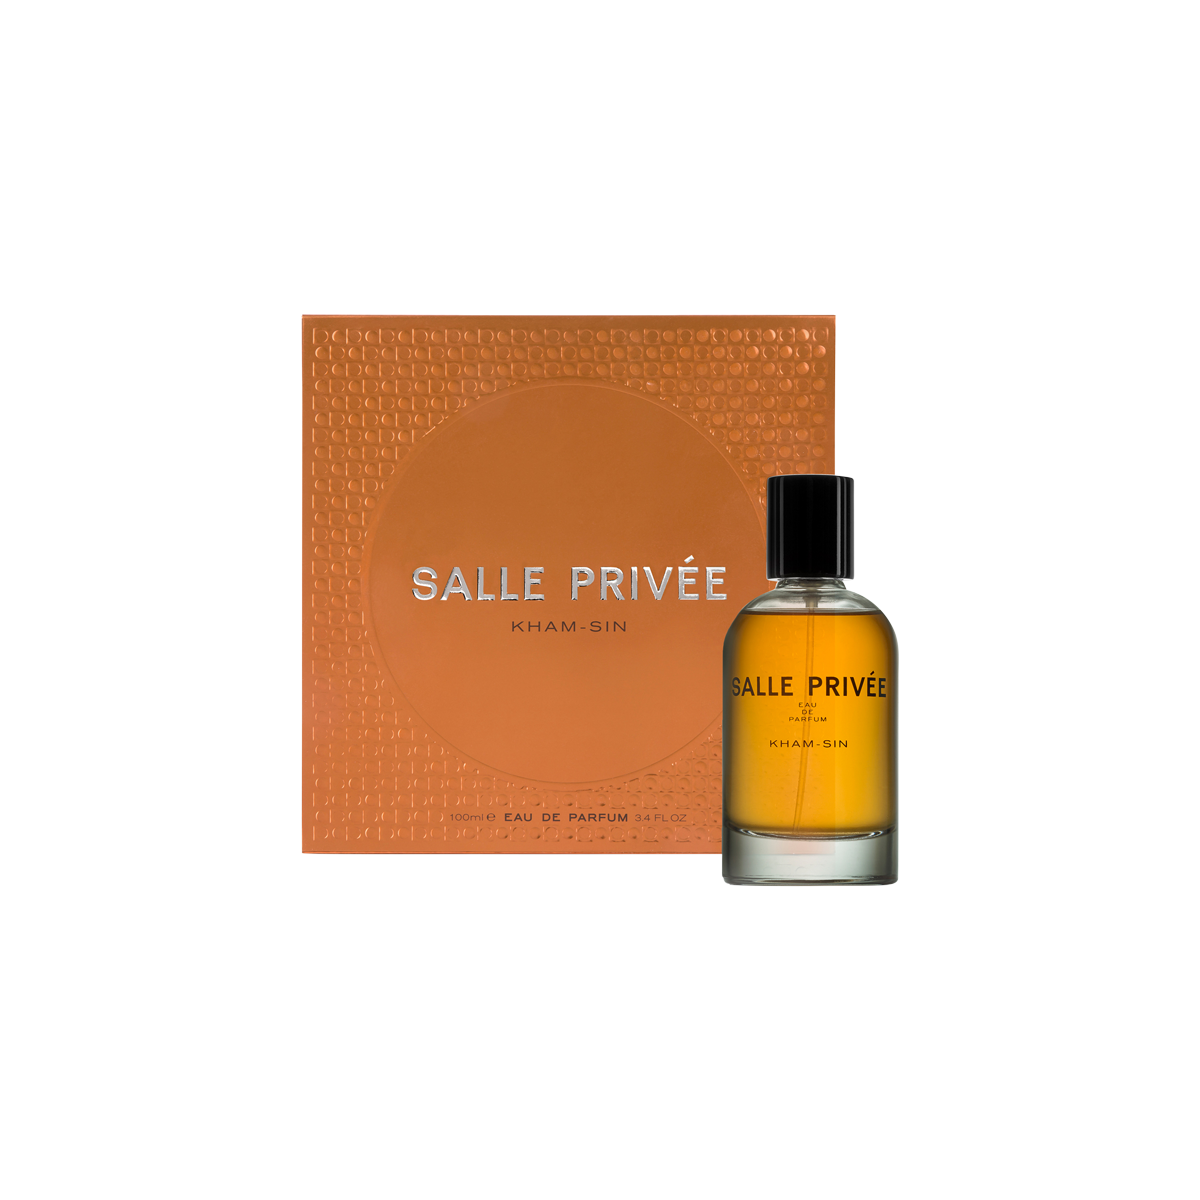 SALLE PRIVEE - Kham-Sin Eau de Parfum